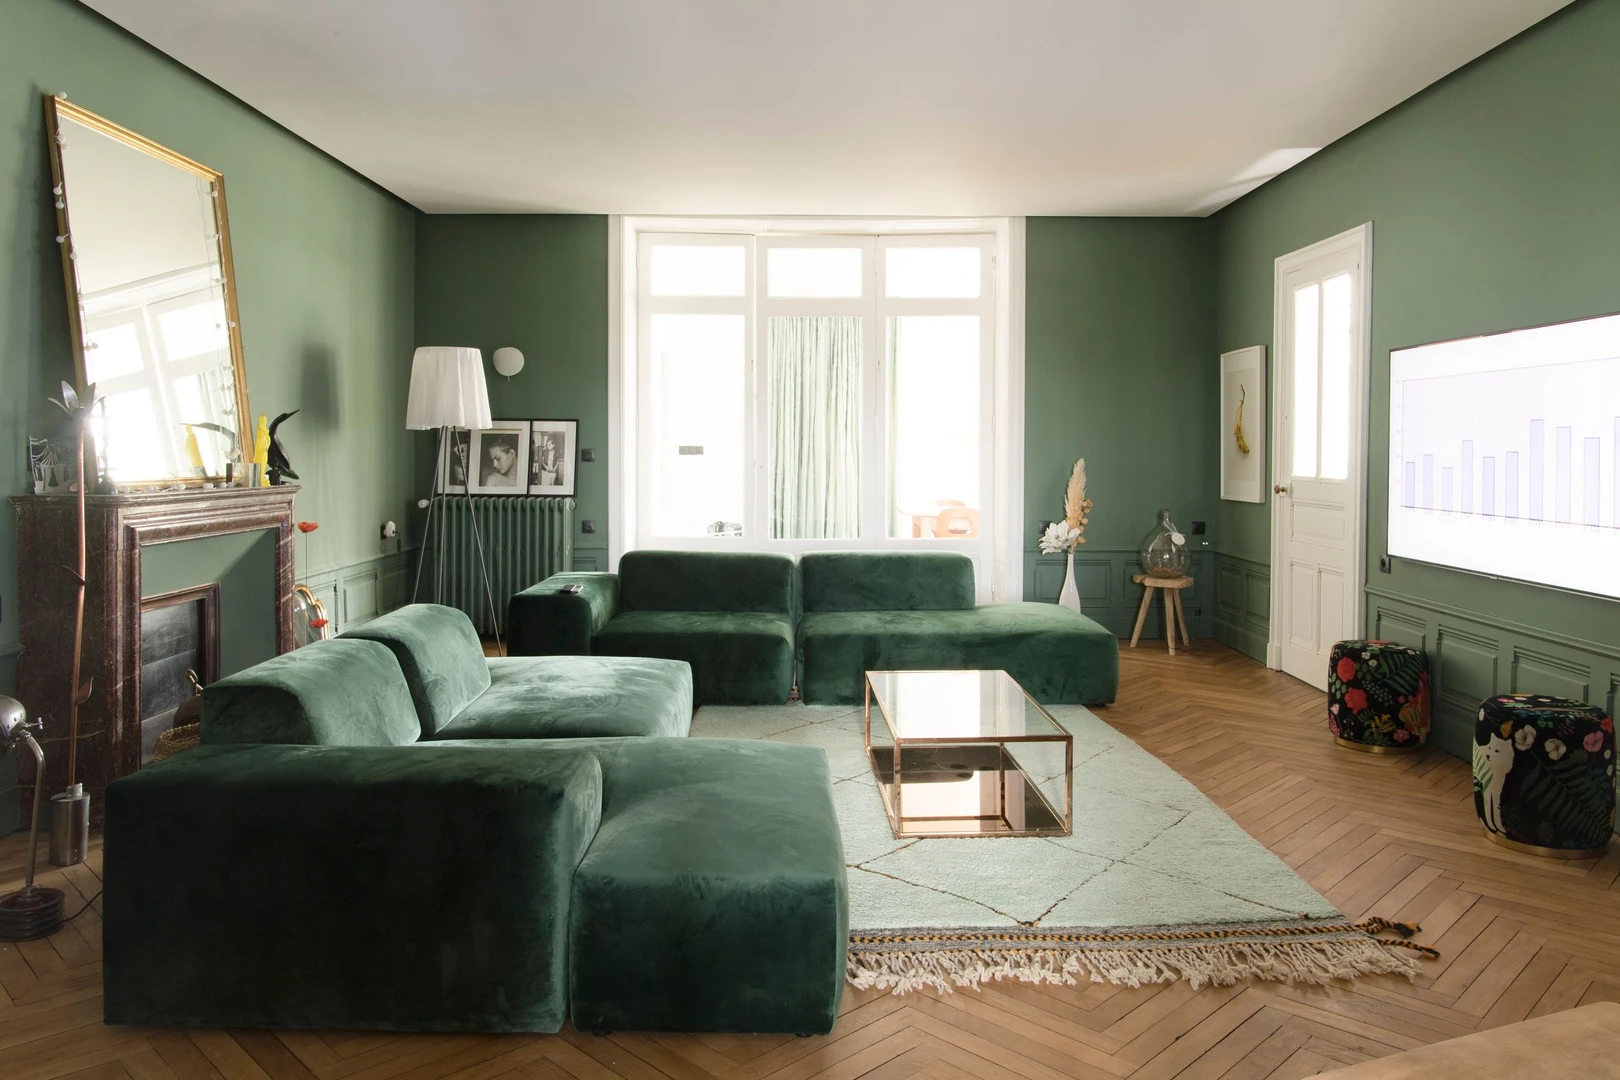 Chambre à louer dans un appartement en colocation à Nantes